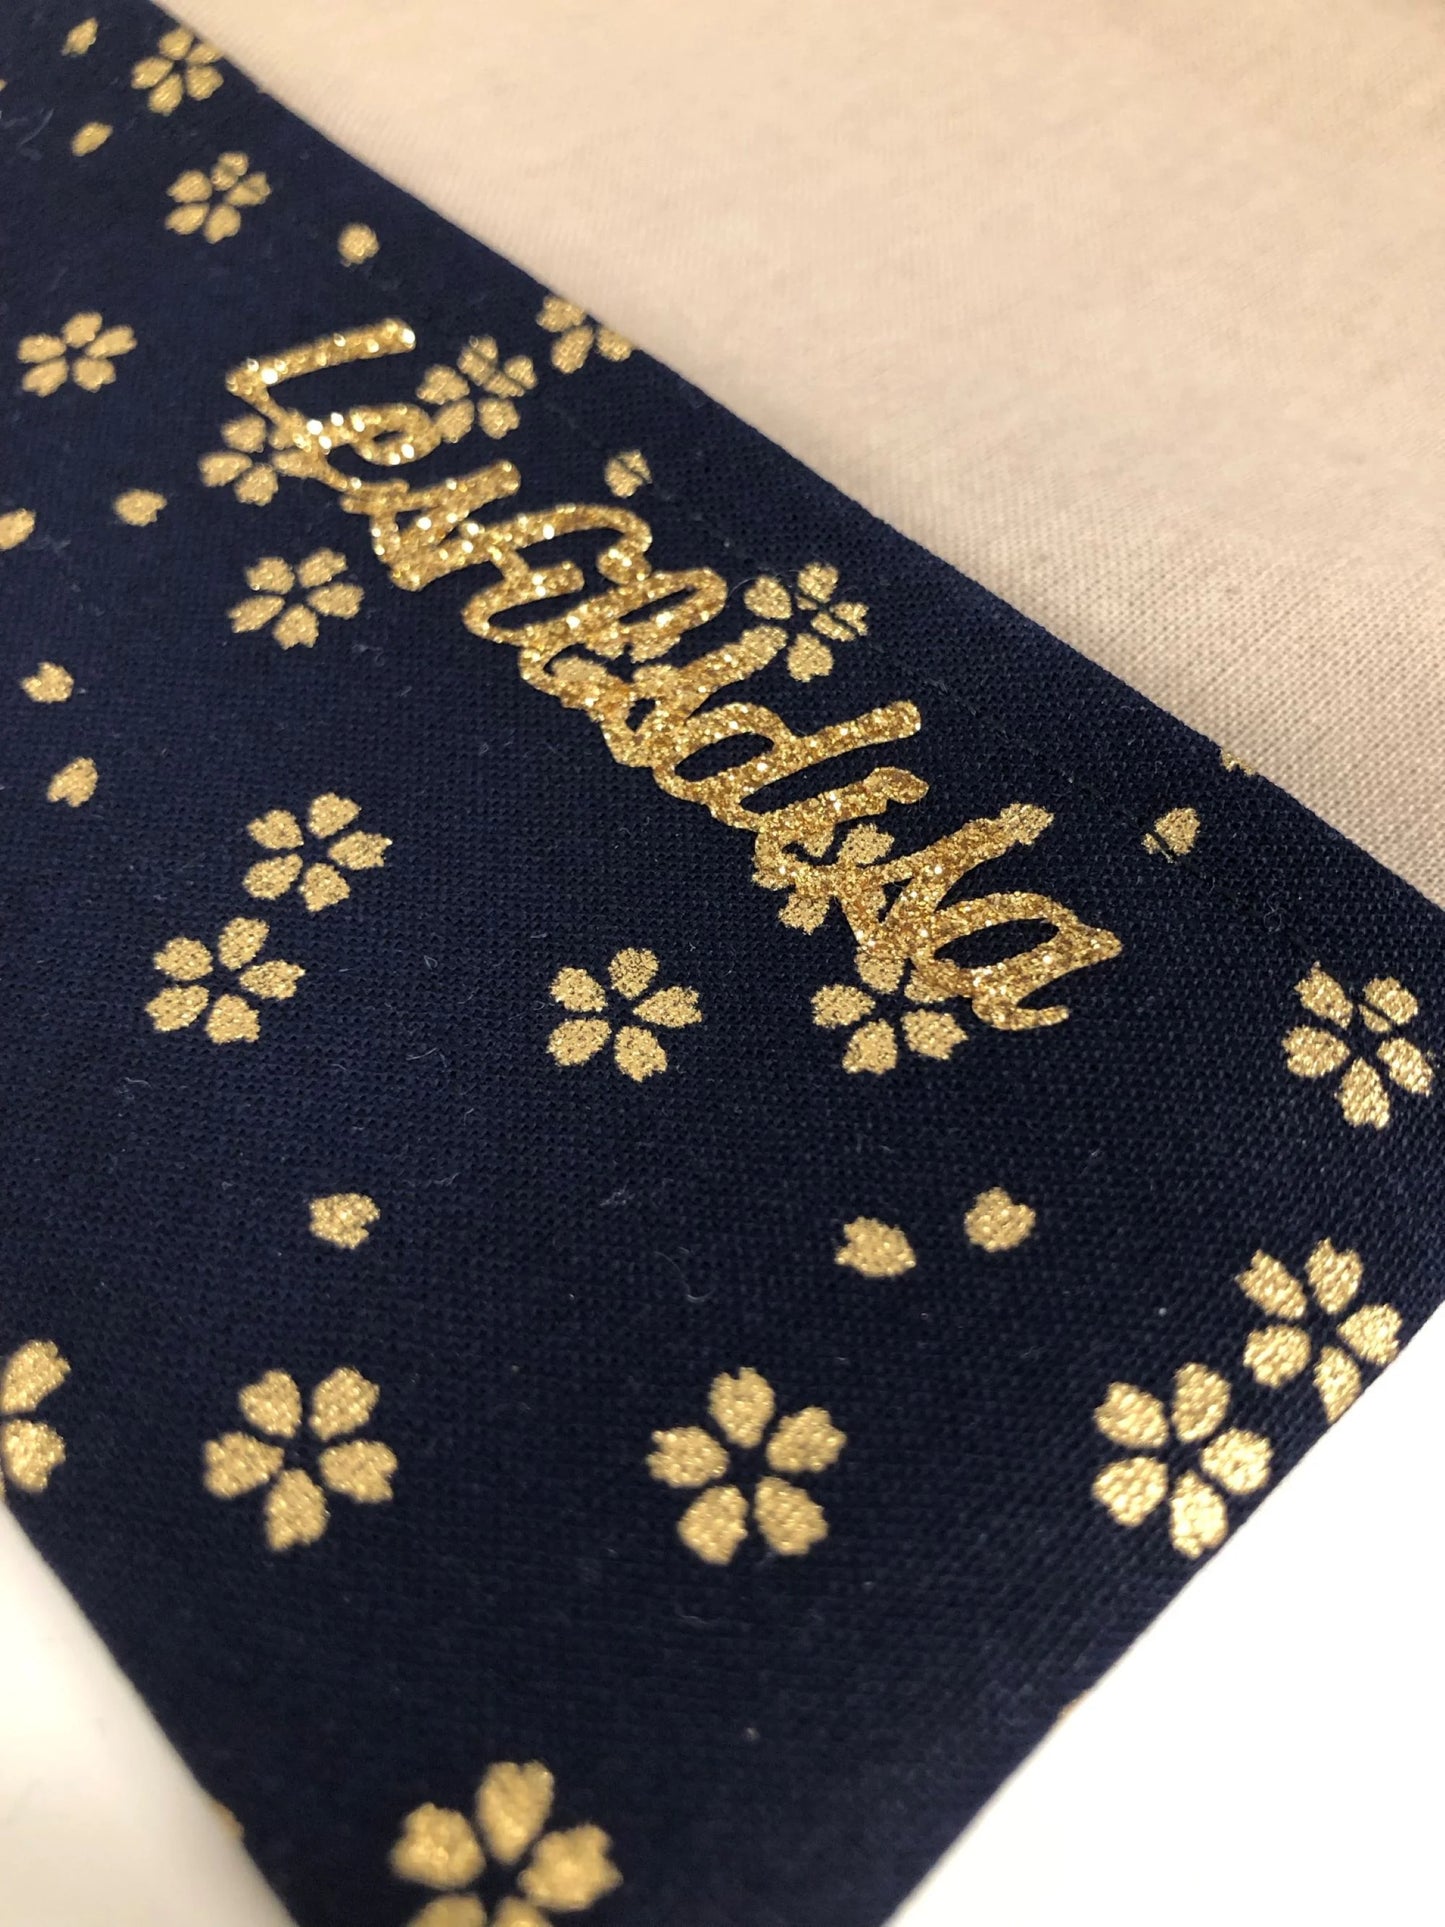 La marque Lesfilsdisa apposée sur le rabat inférieur du porte-chéquier en lin beige et tissu japonais Sakura bleu nuit.